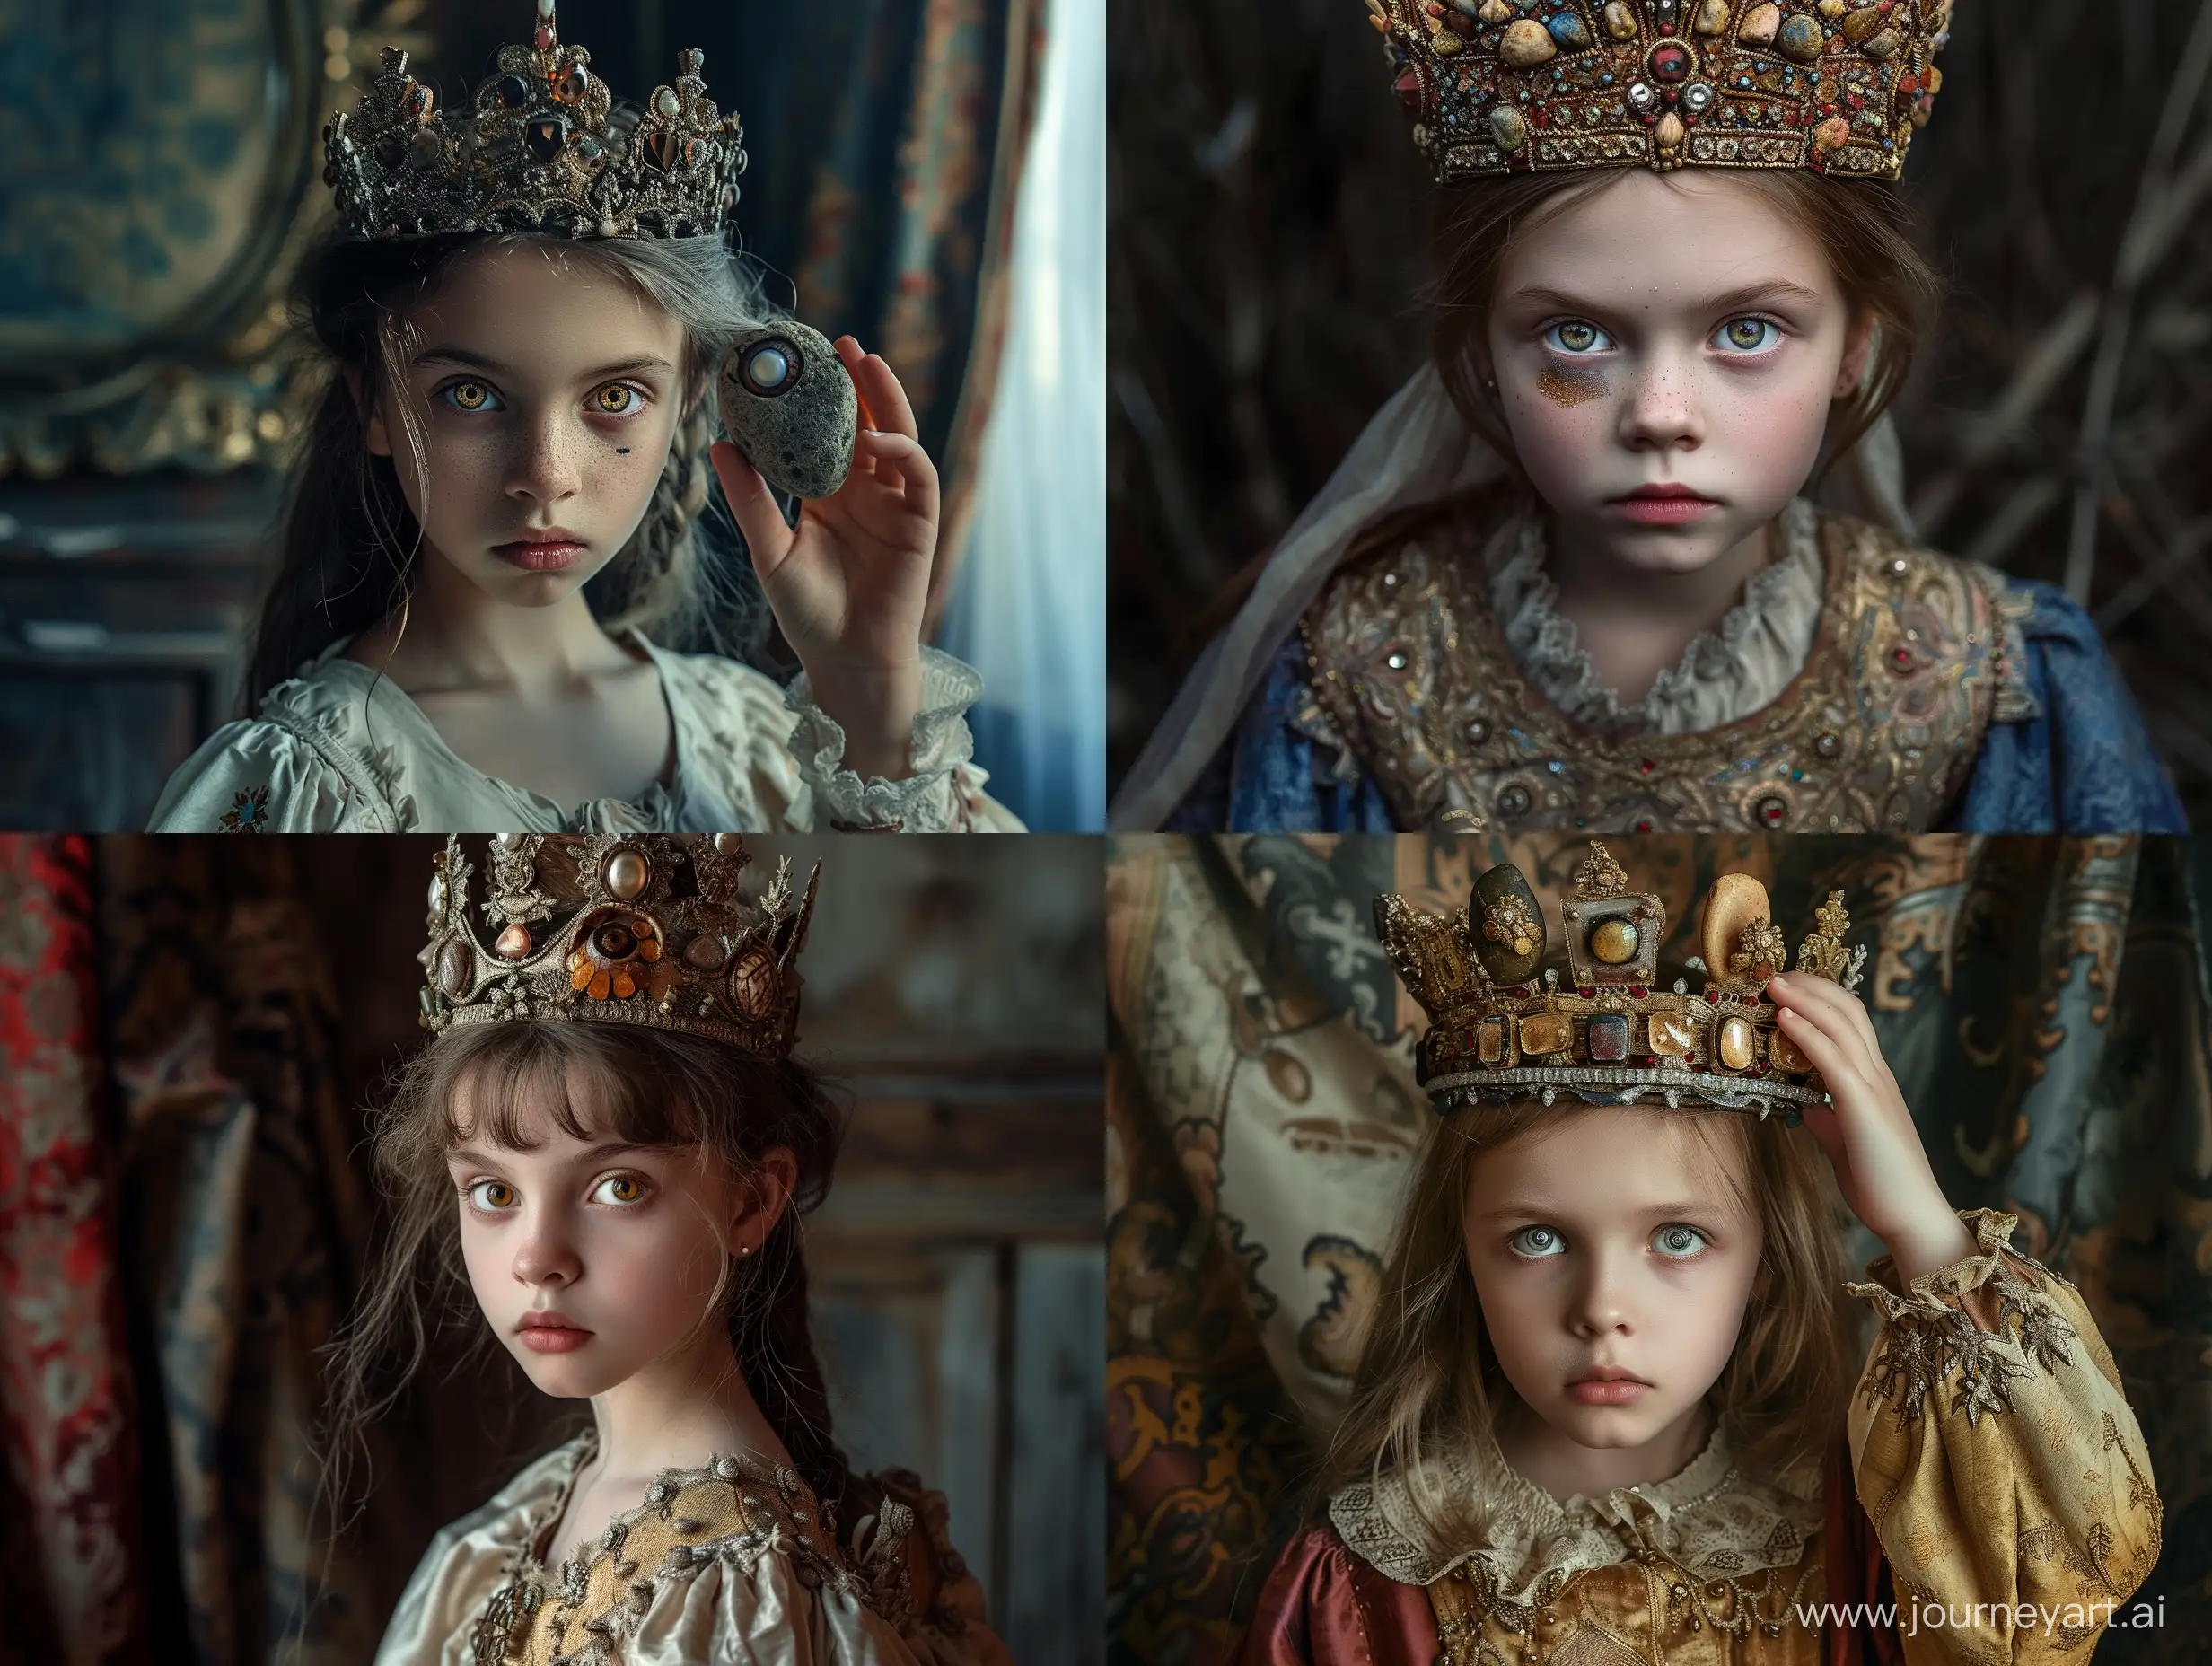 Молодая девушка оставляет ещё полкоролевства
Камни с короны, два высохших глаза, русский народный фолк-стиль, русский фолк стиль, славянский стиль